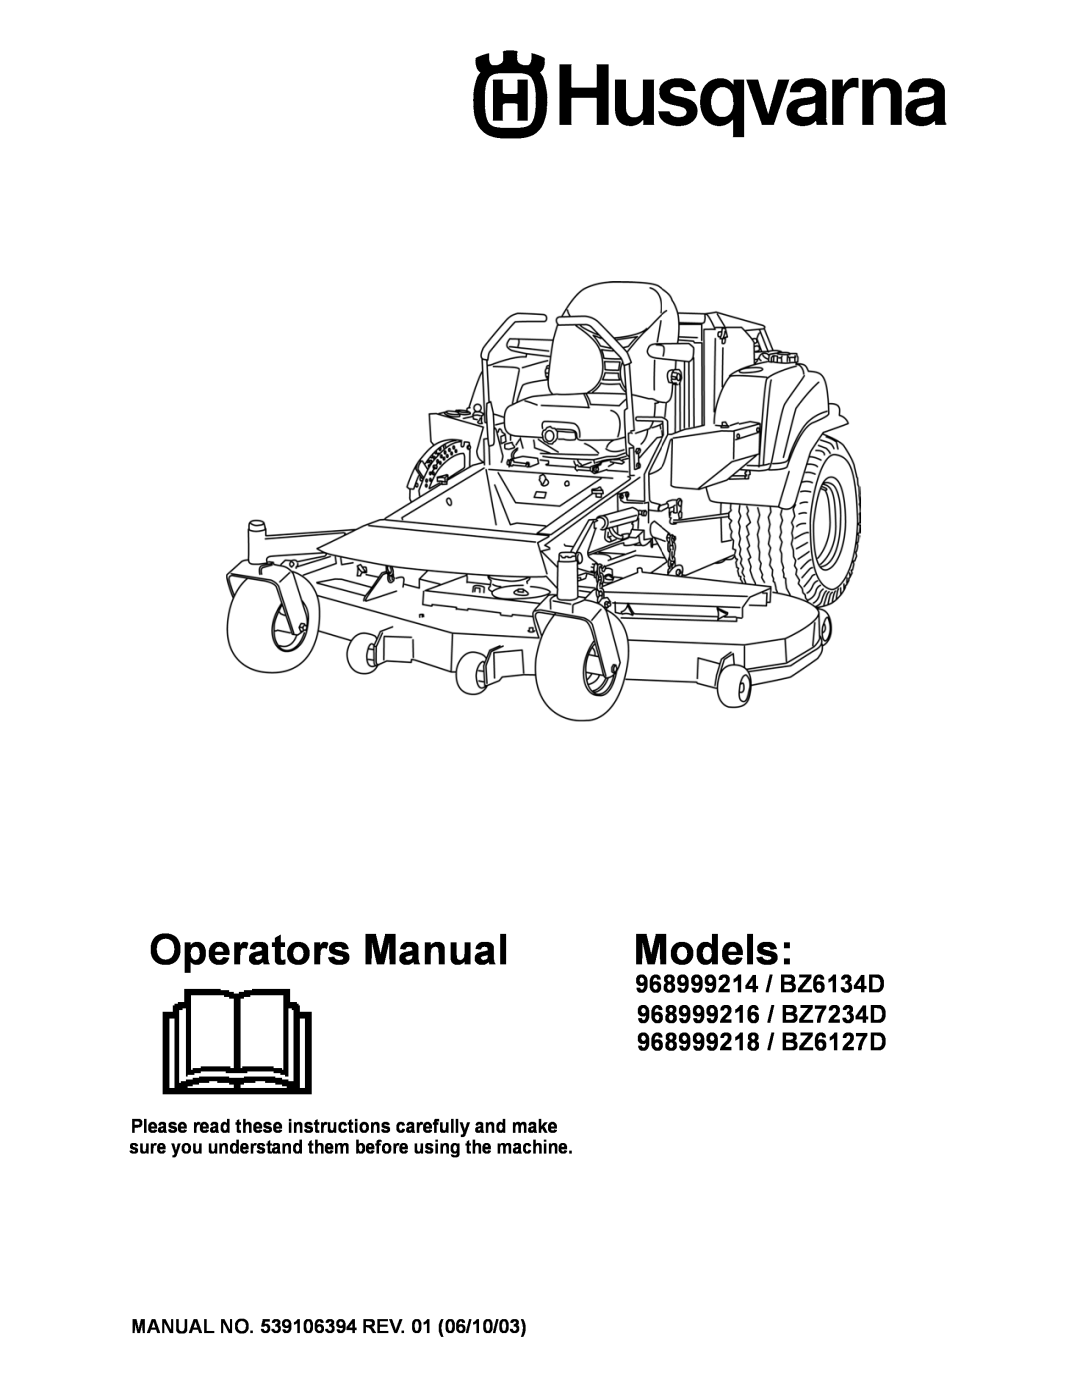 Husqvarna manual Operators Manual, Models, 968999214 / BZ6134D, 968999216 / BZ7234D, 968999218 / BZ6127D 